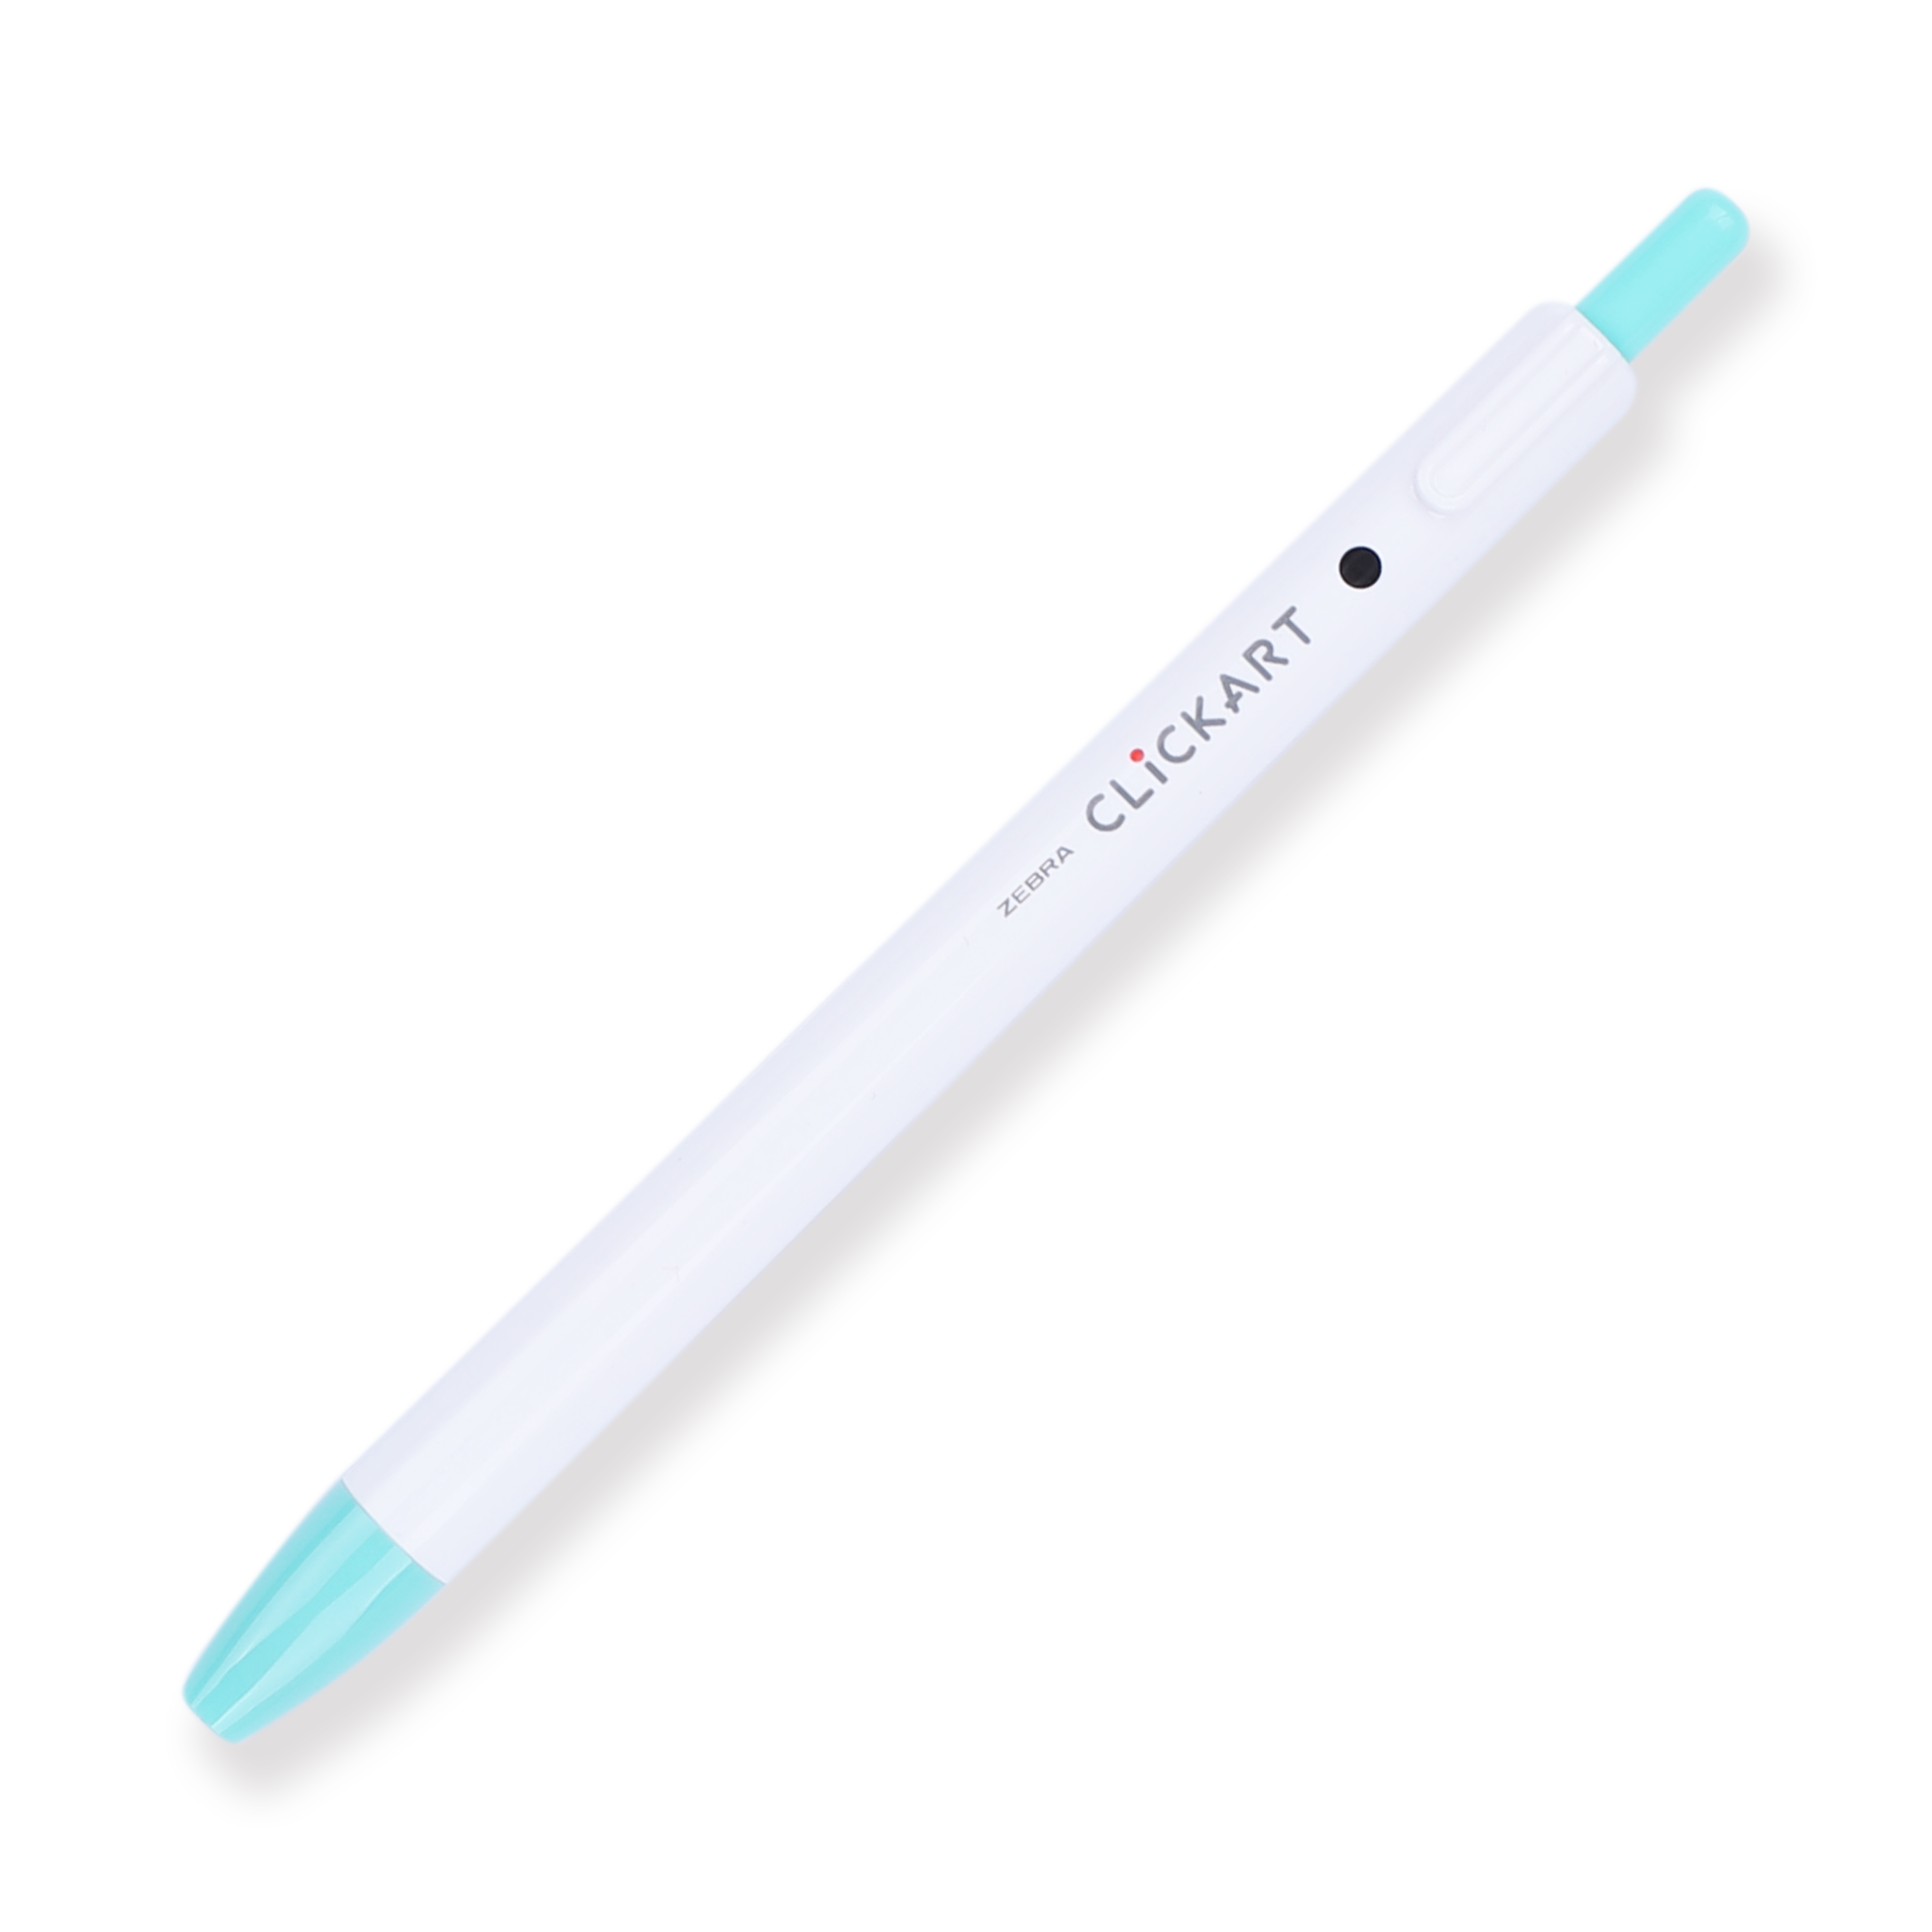 NEW Zebra ClickArt 0.6mm Retractable Marker Pen Set of 18 With Box